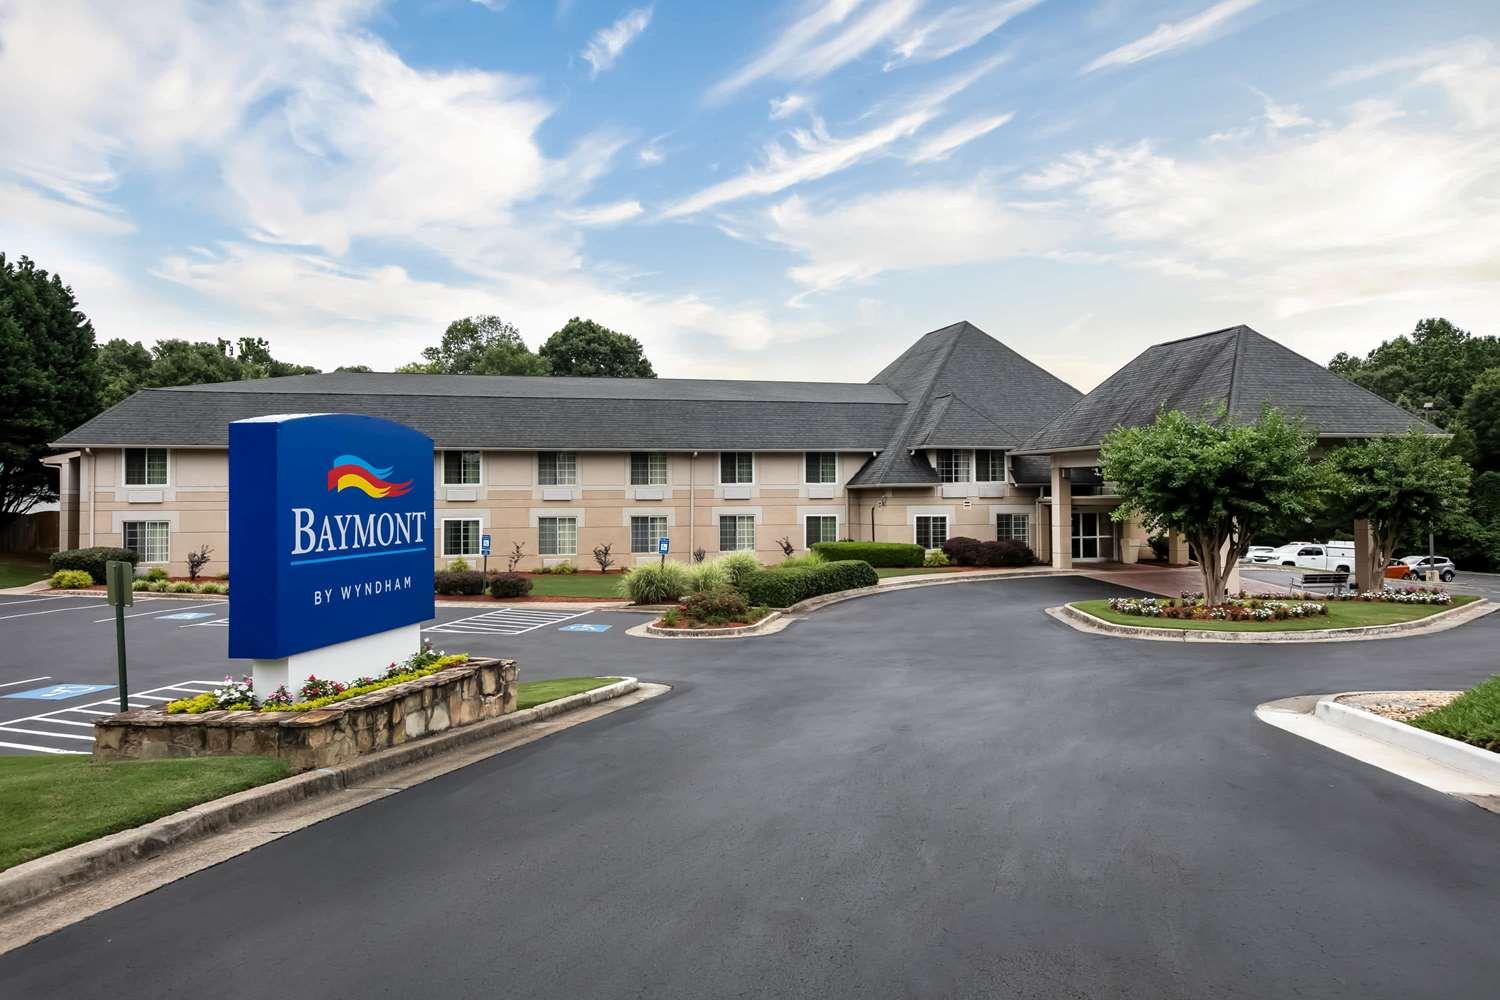 Baymont Inn & Suites Braselton in Braselton, GA